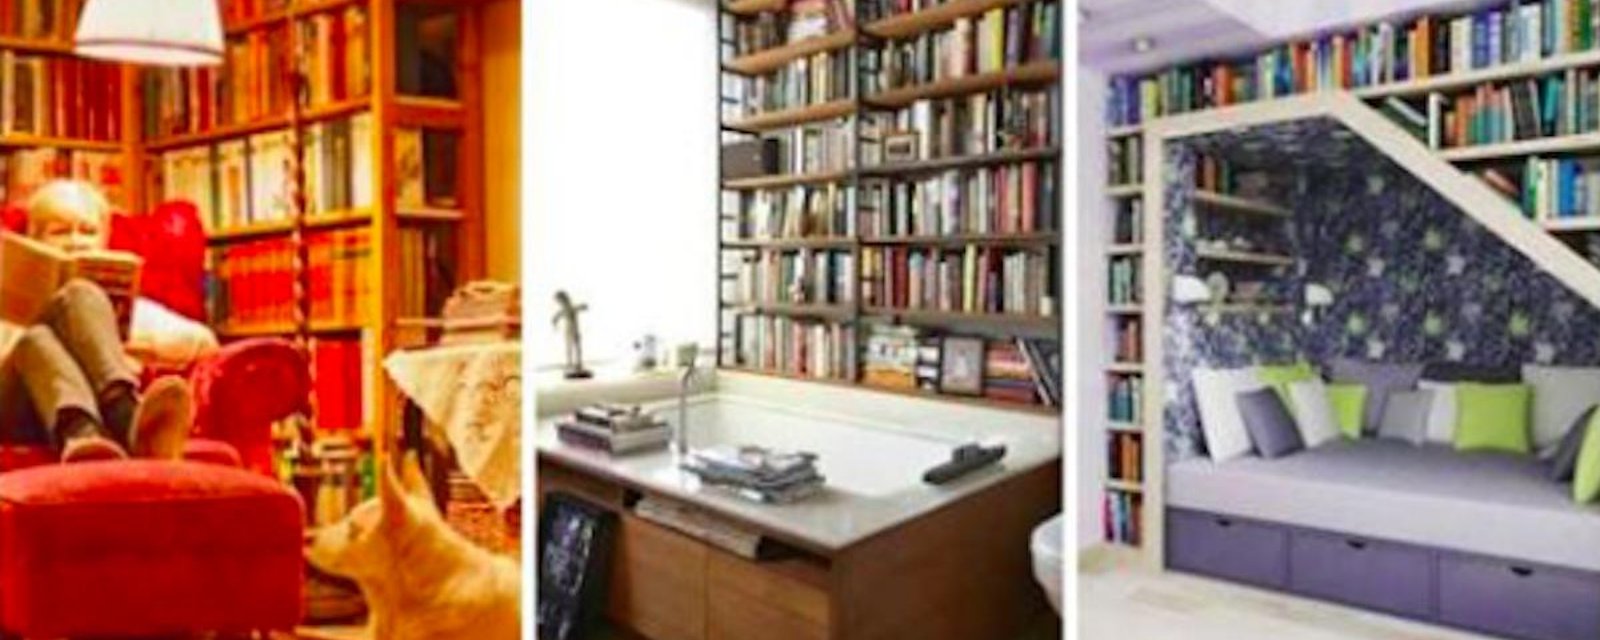 22 bibliothèques qui feront rêver les amoureux des livres!